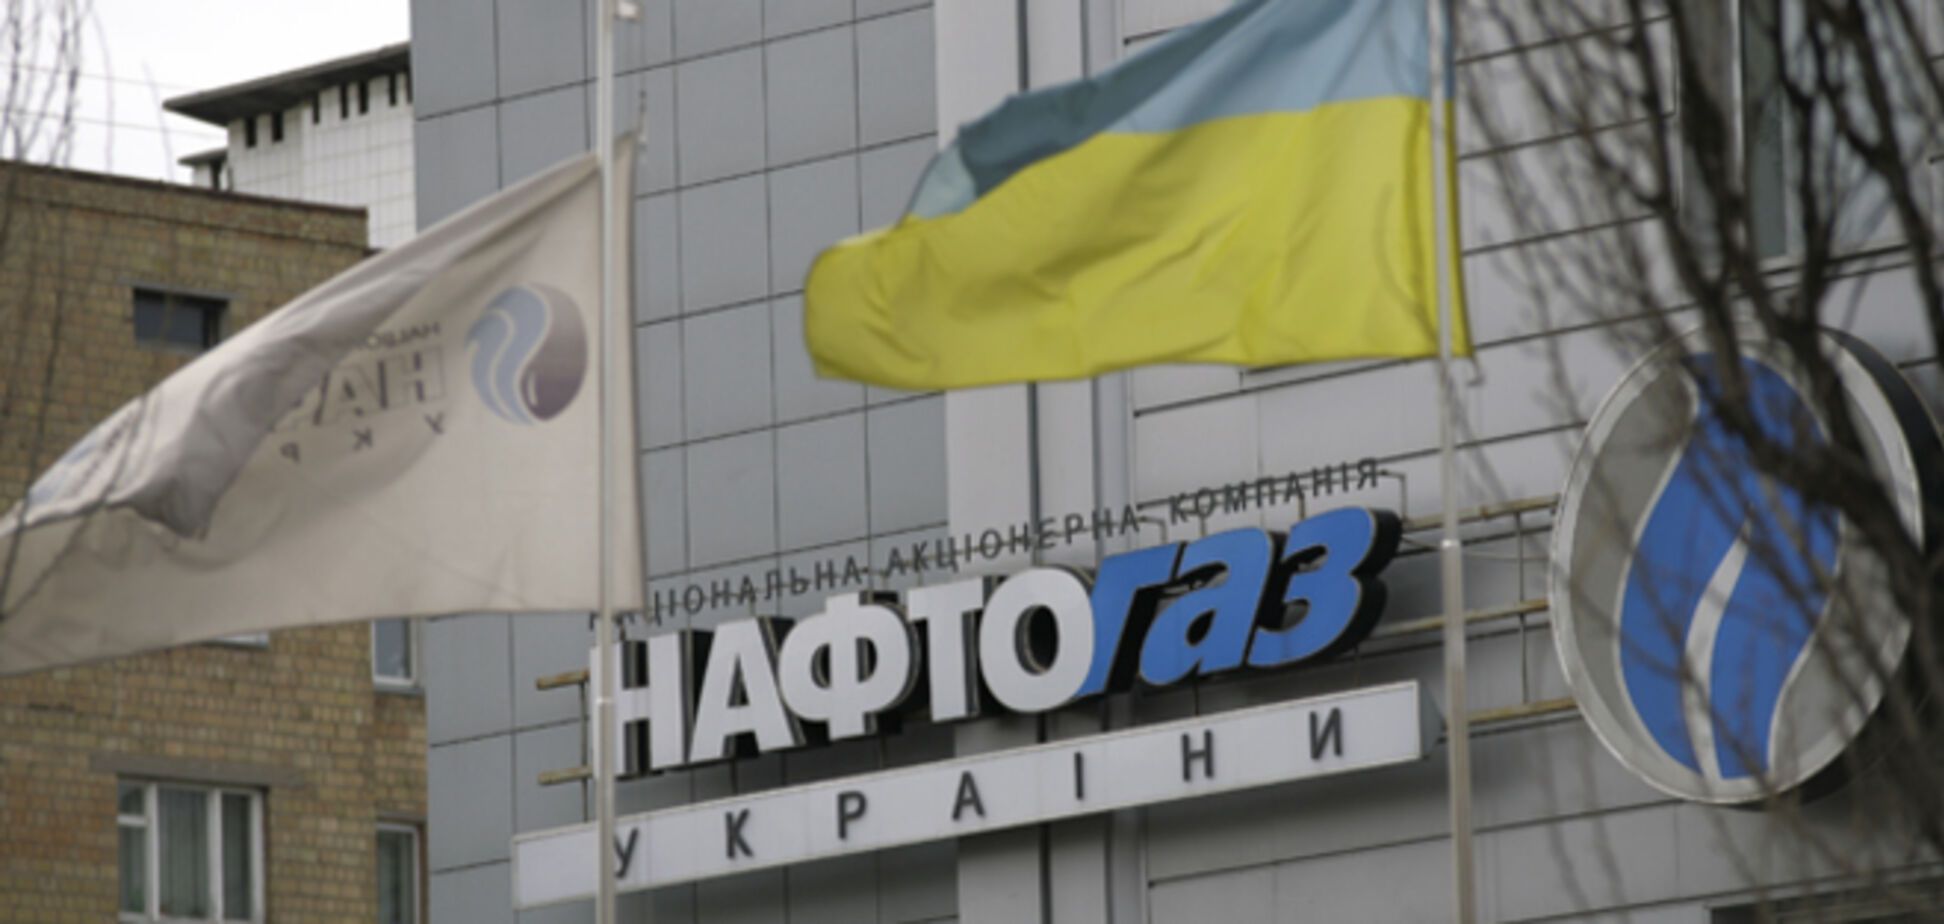 Нафтогаз обвиняет Киевэнерго в проблемах с горячей водой в Киеве